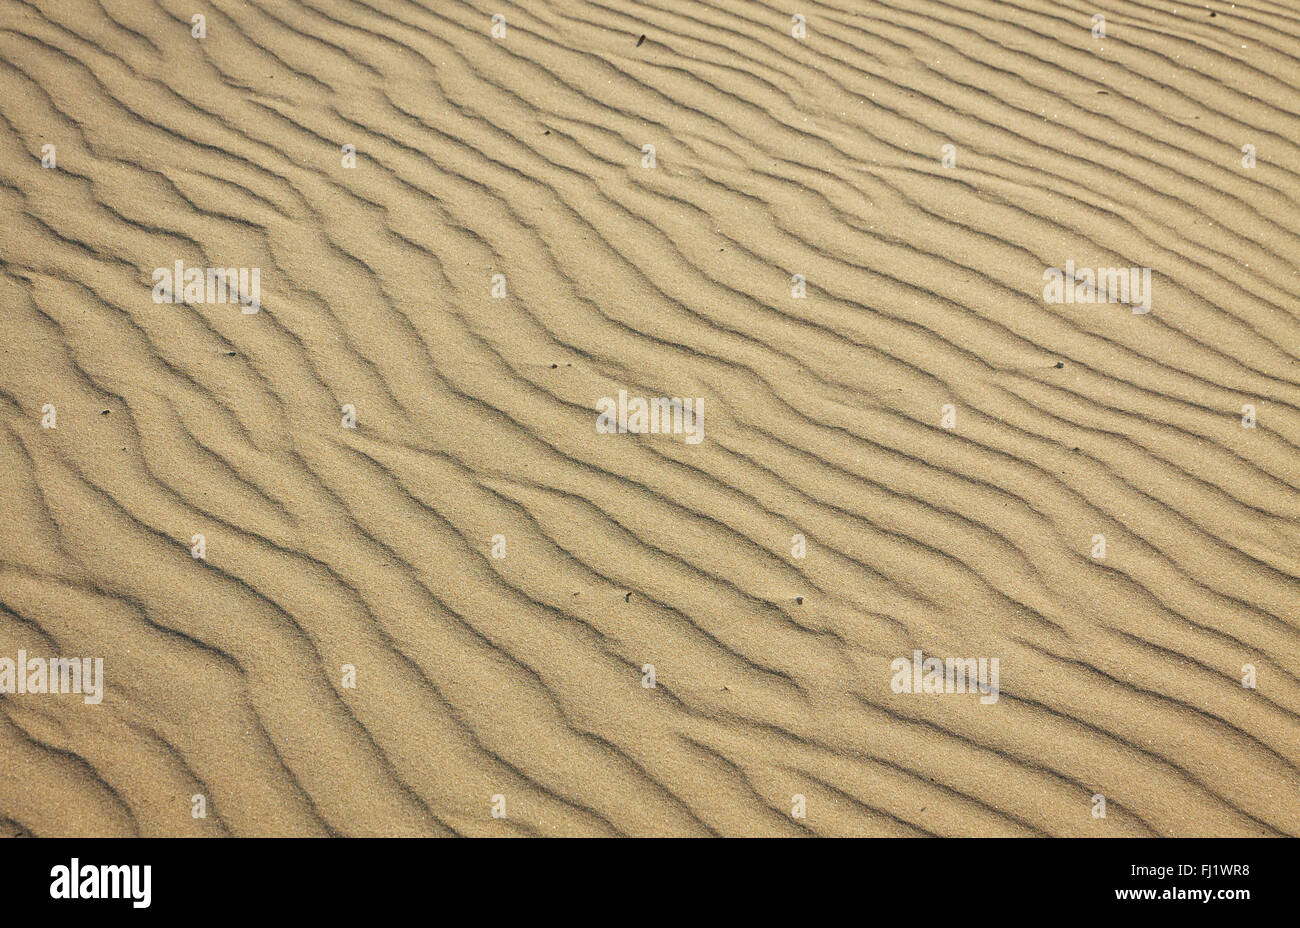 Arrière-plan de petites dunes de sable sur la plage Banque D'Images